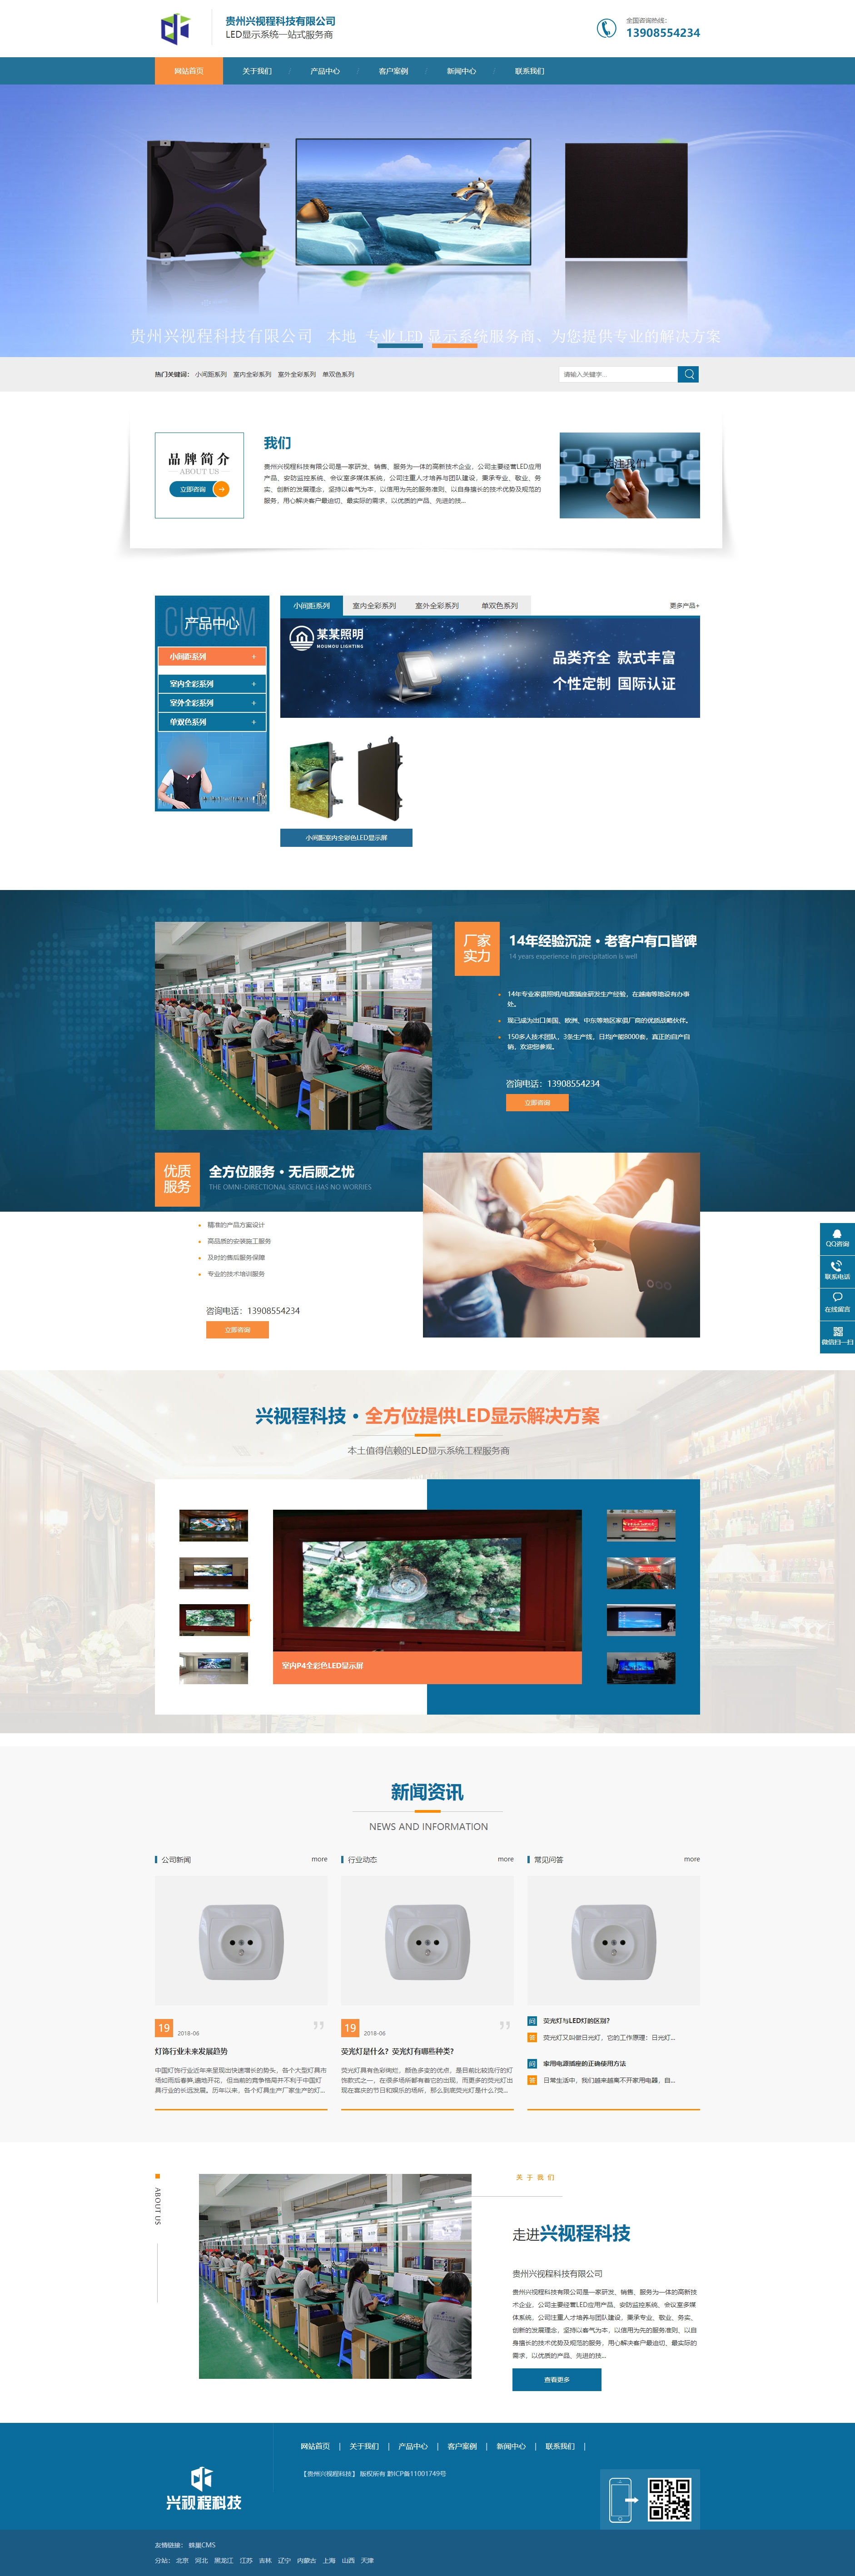 安顺贵州兴视程科技有限公司 网站正式上线